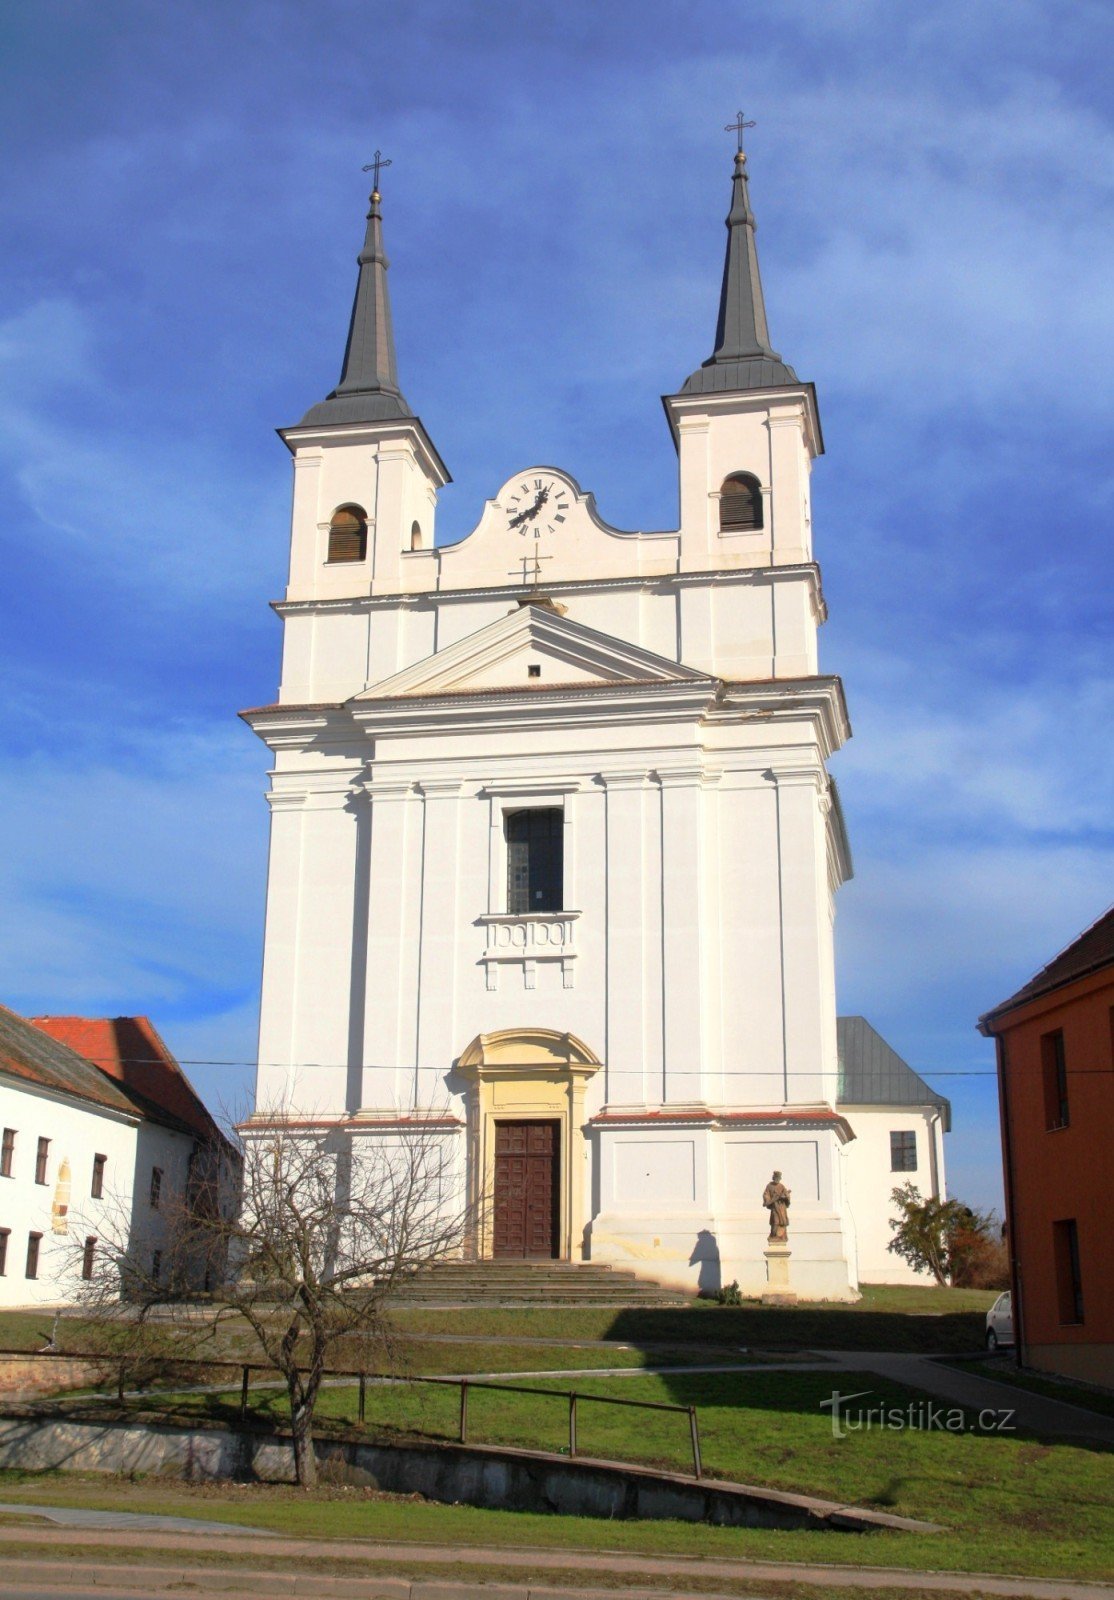 Drnholec - Den Hellige Treenigheds Kirke